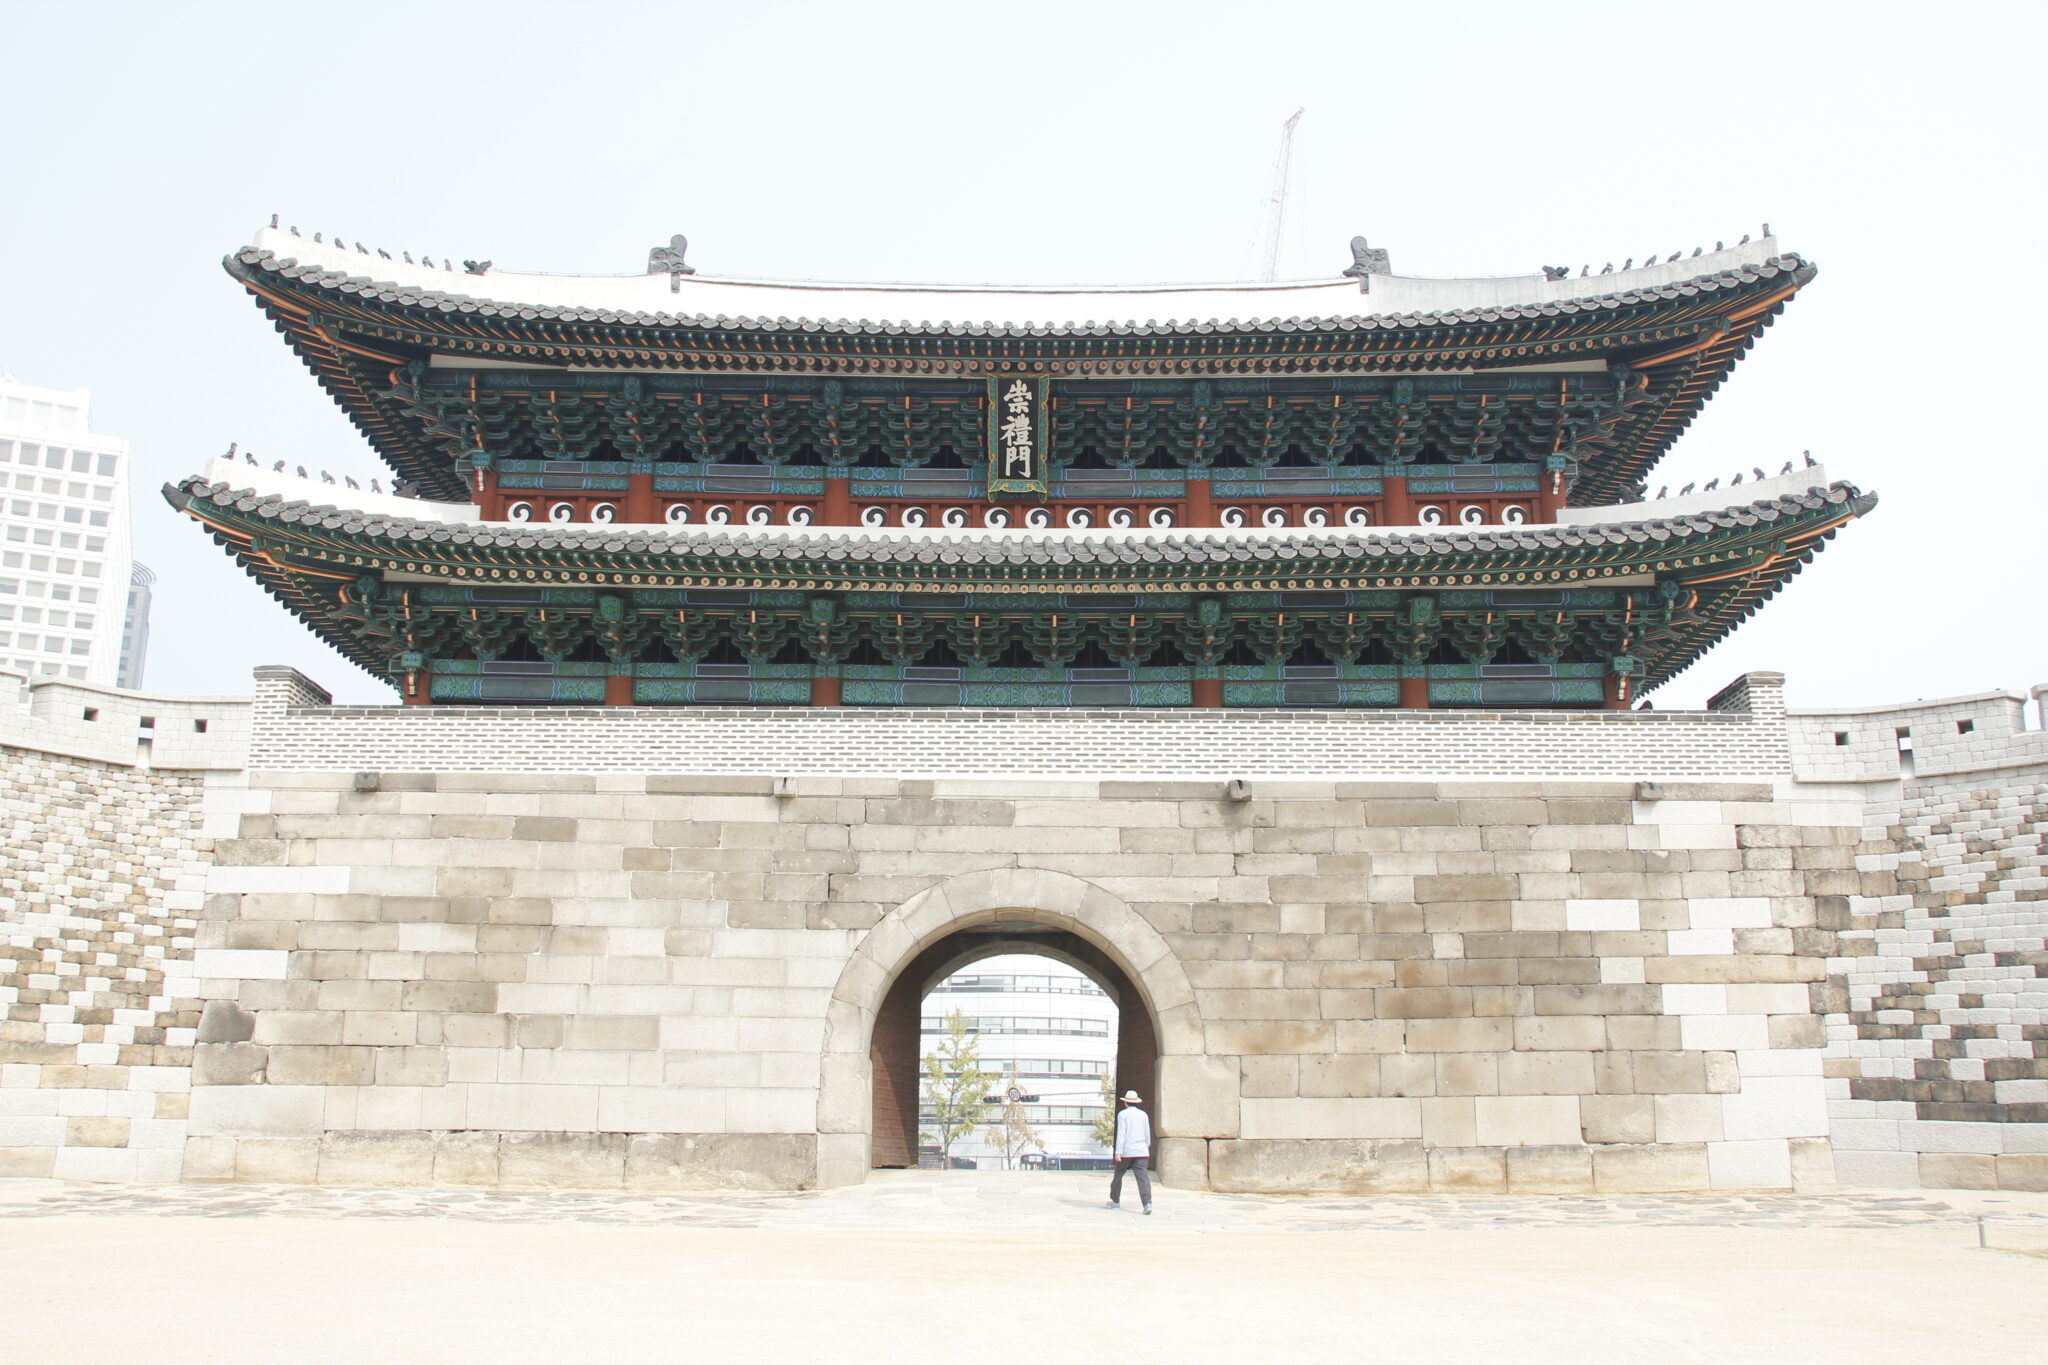 Tempel in Südkorea mit Stadtkulisse dahinter. Ein Mann steht vorm Tor. Helles Licht, heller Sandstein. Reise-Trends 2023